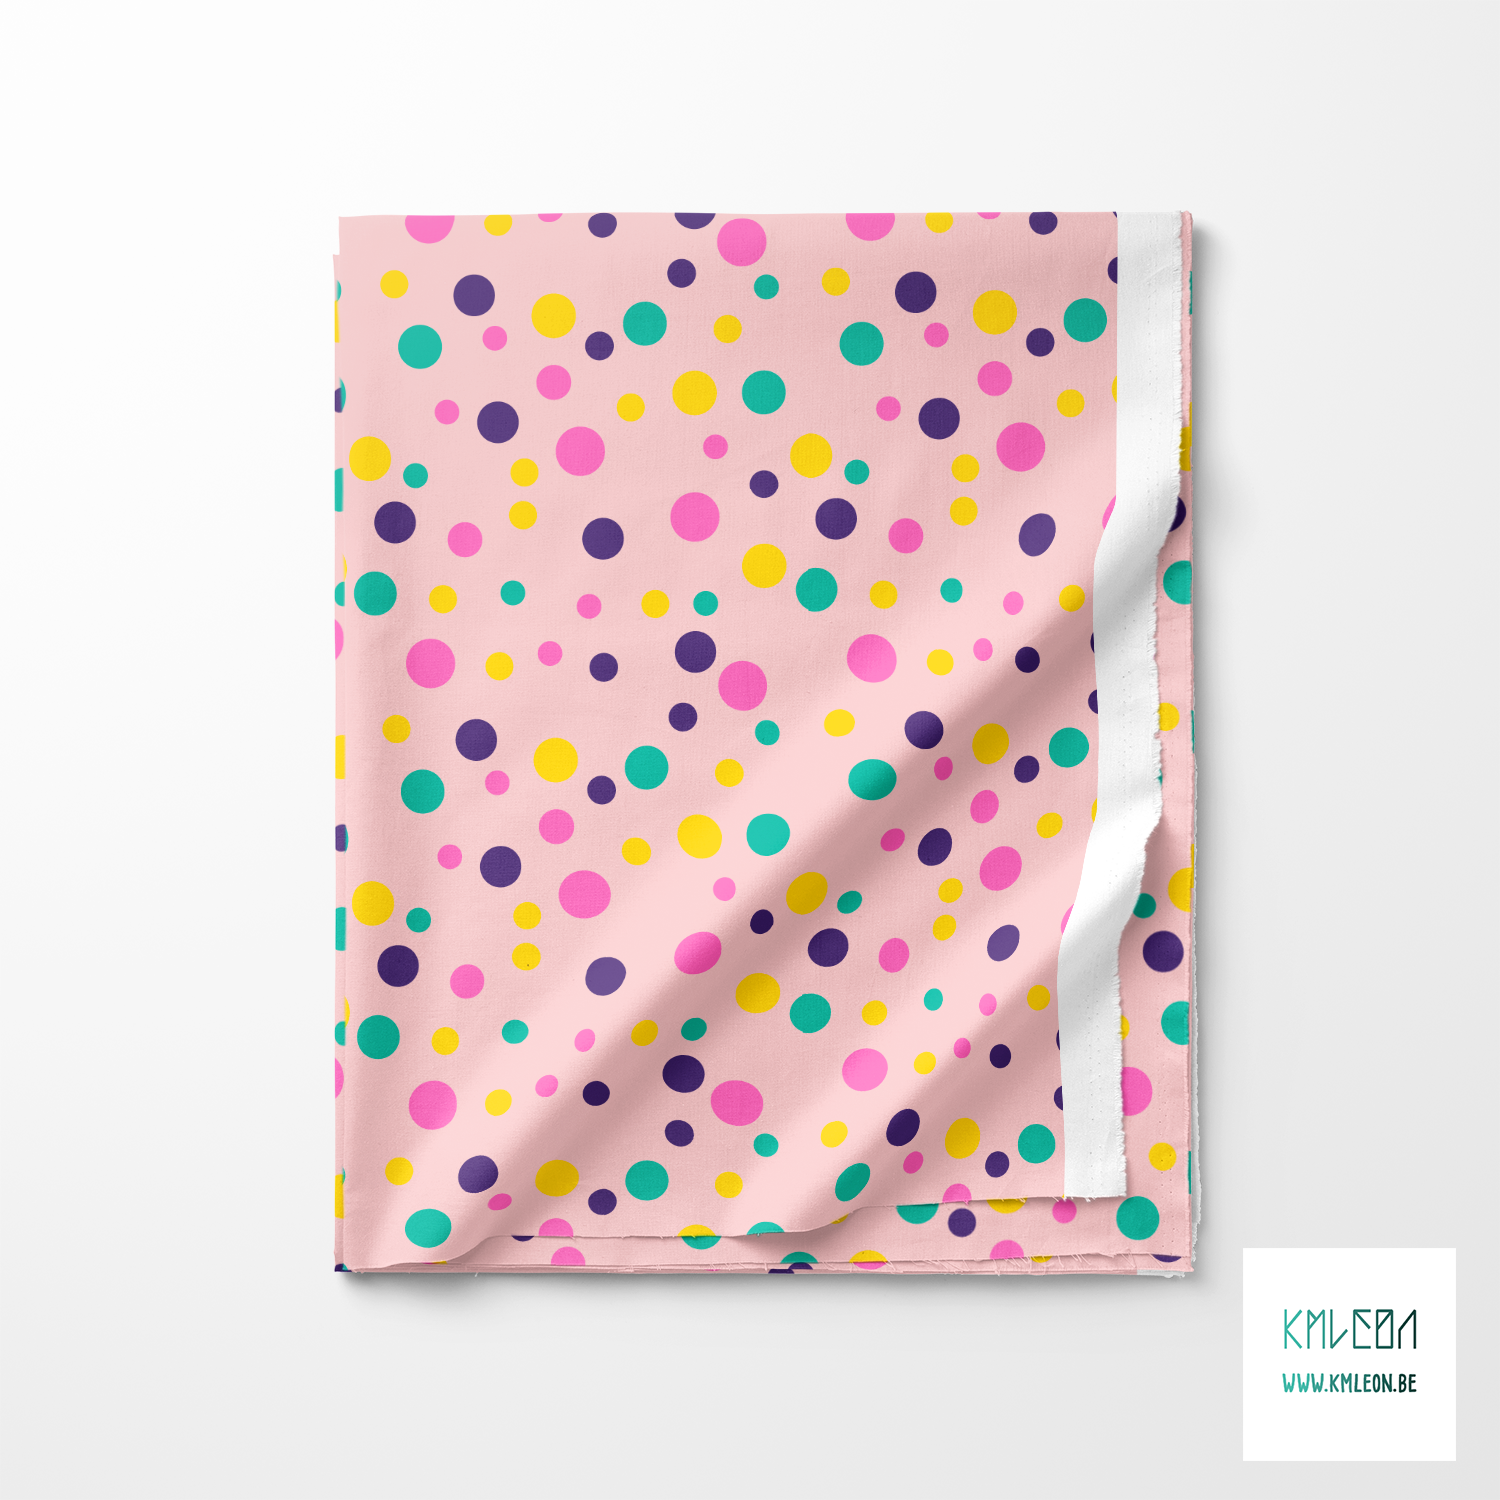 Random yellow, green and pink polka dots fabric